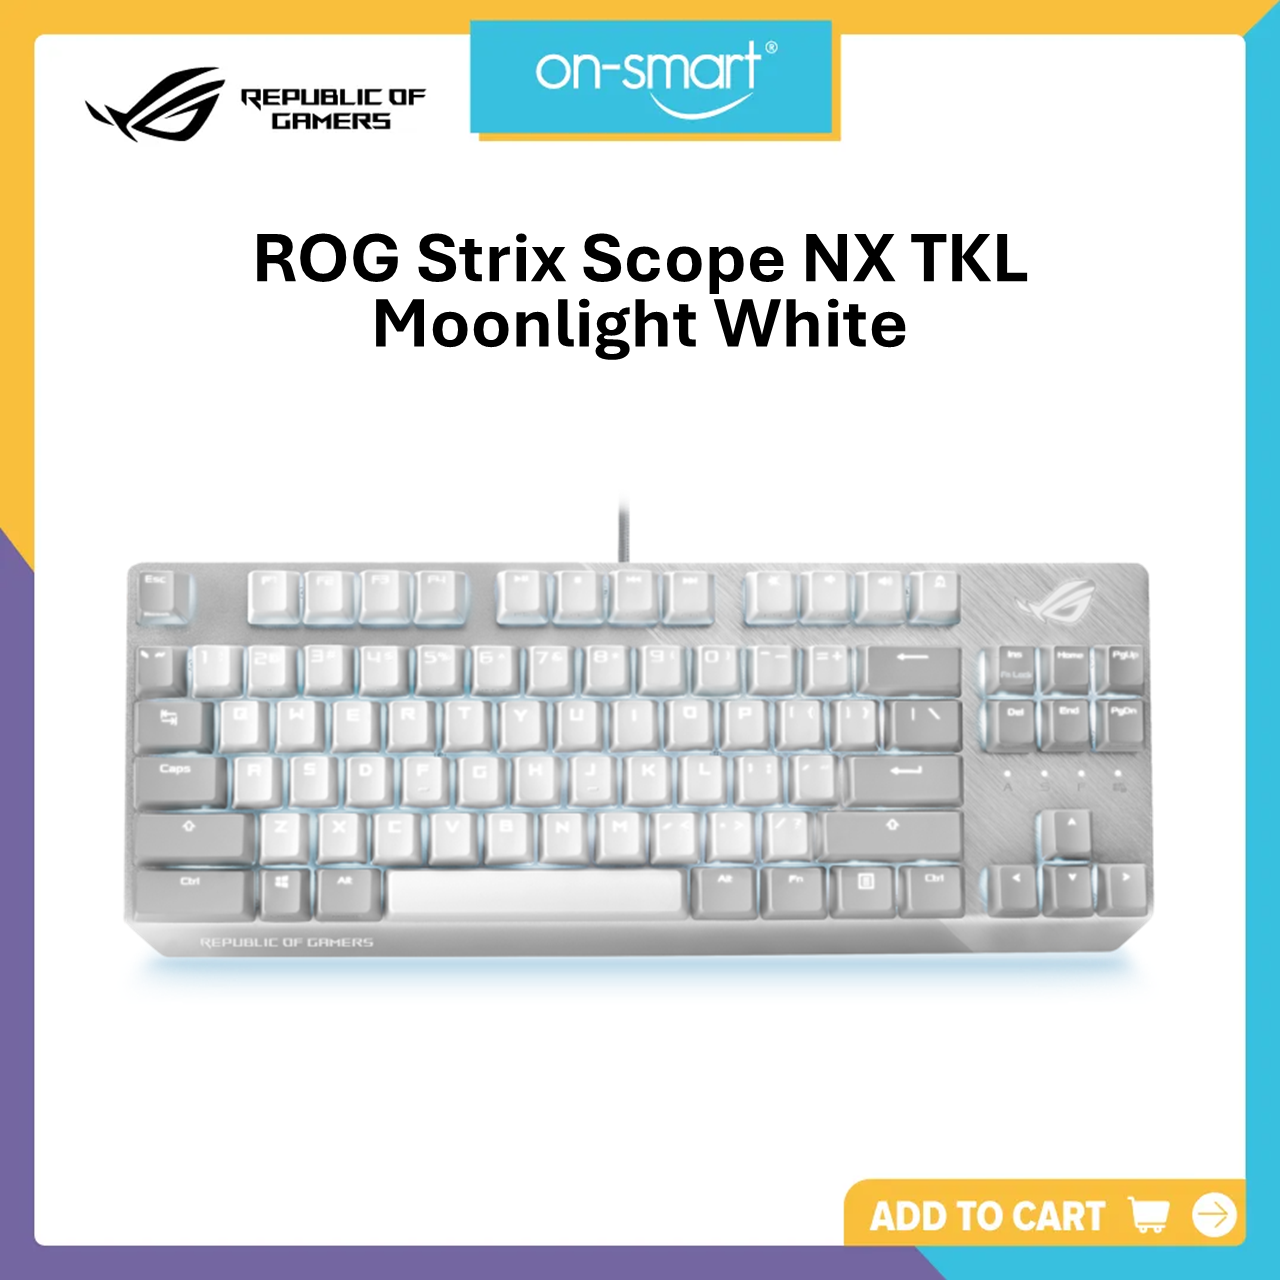 ASUS ROG Strix Scope NX TKL Moonlight White Mechanical Gaming Keyboard